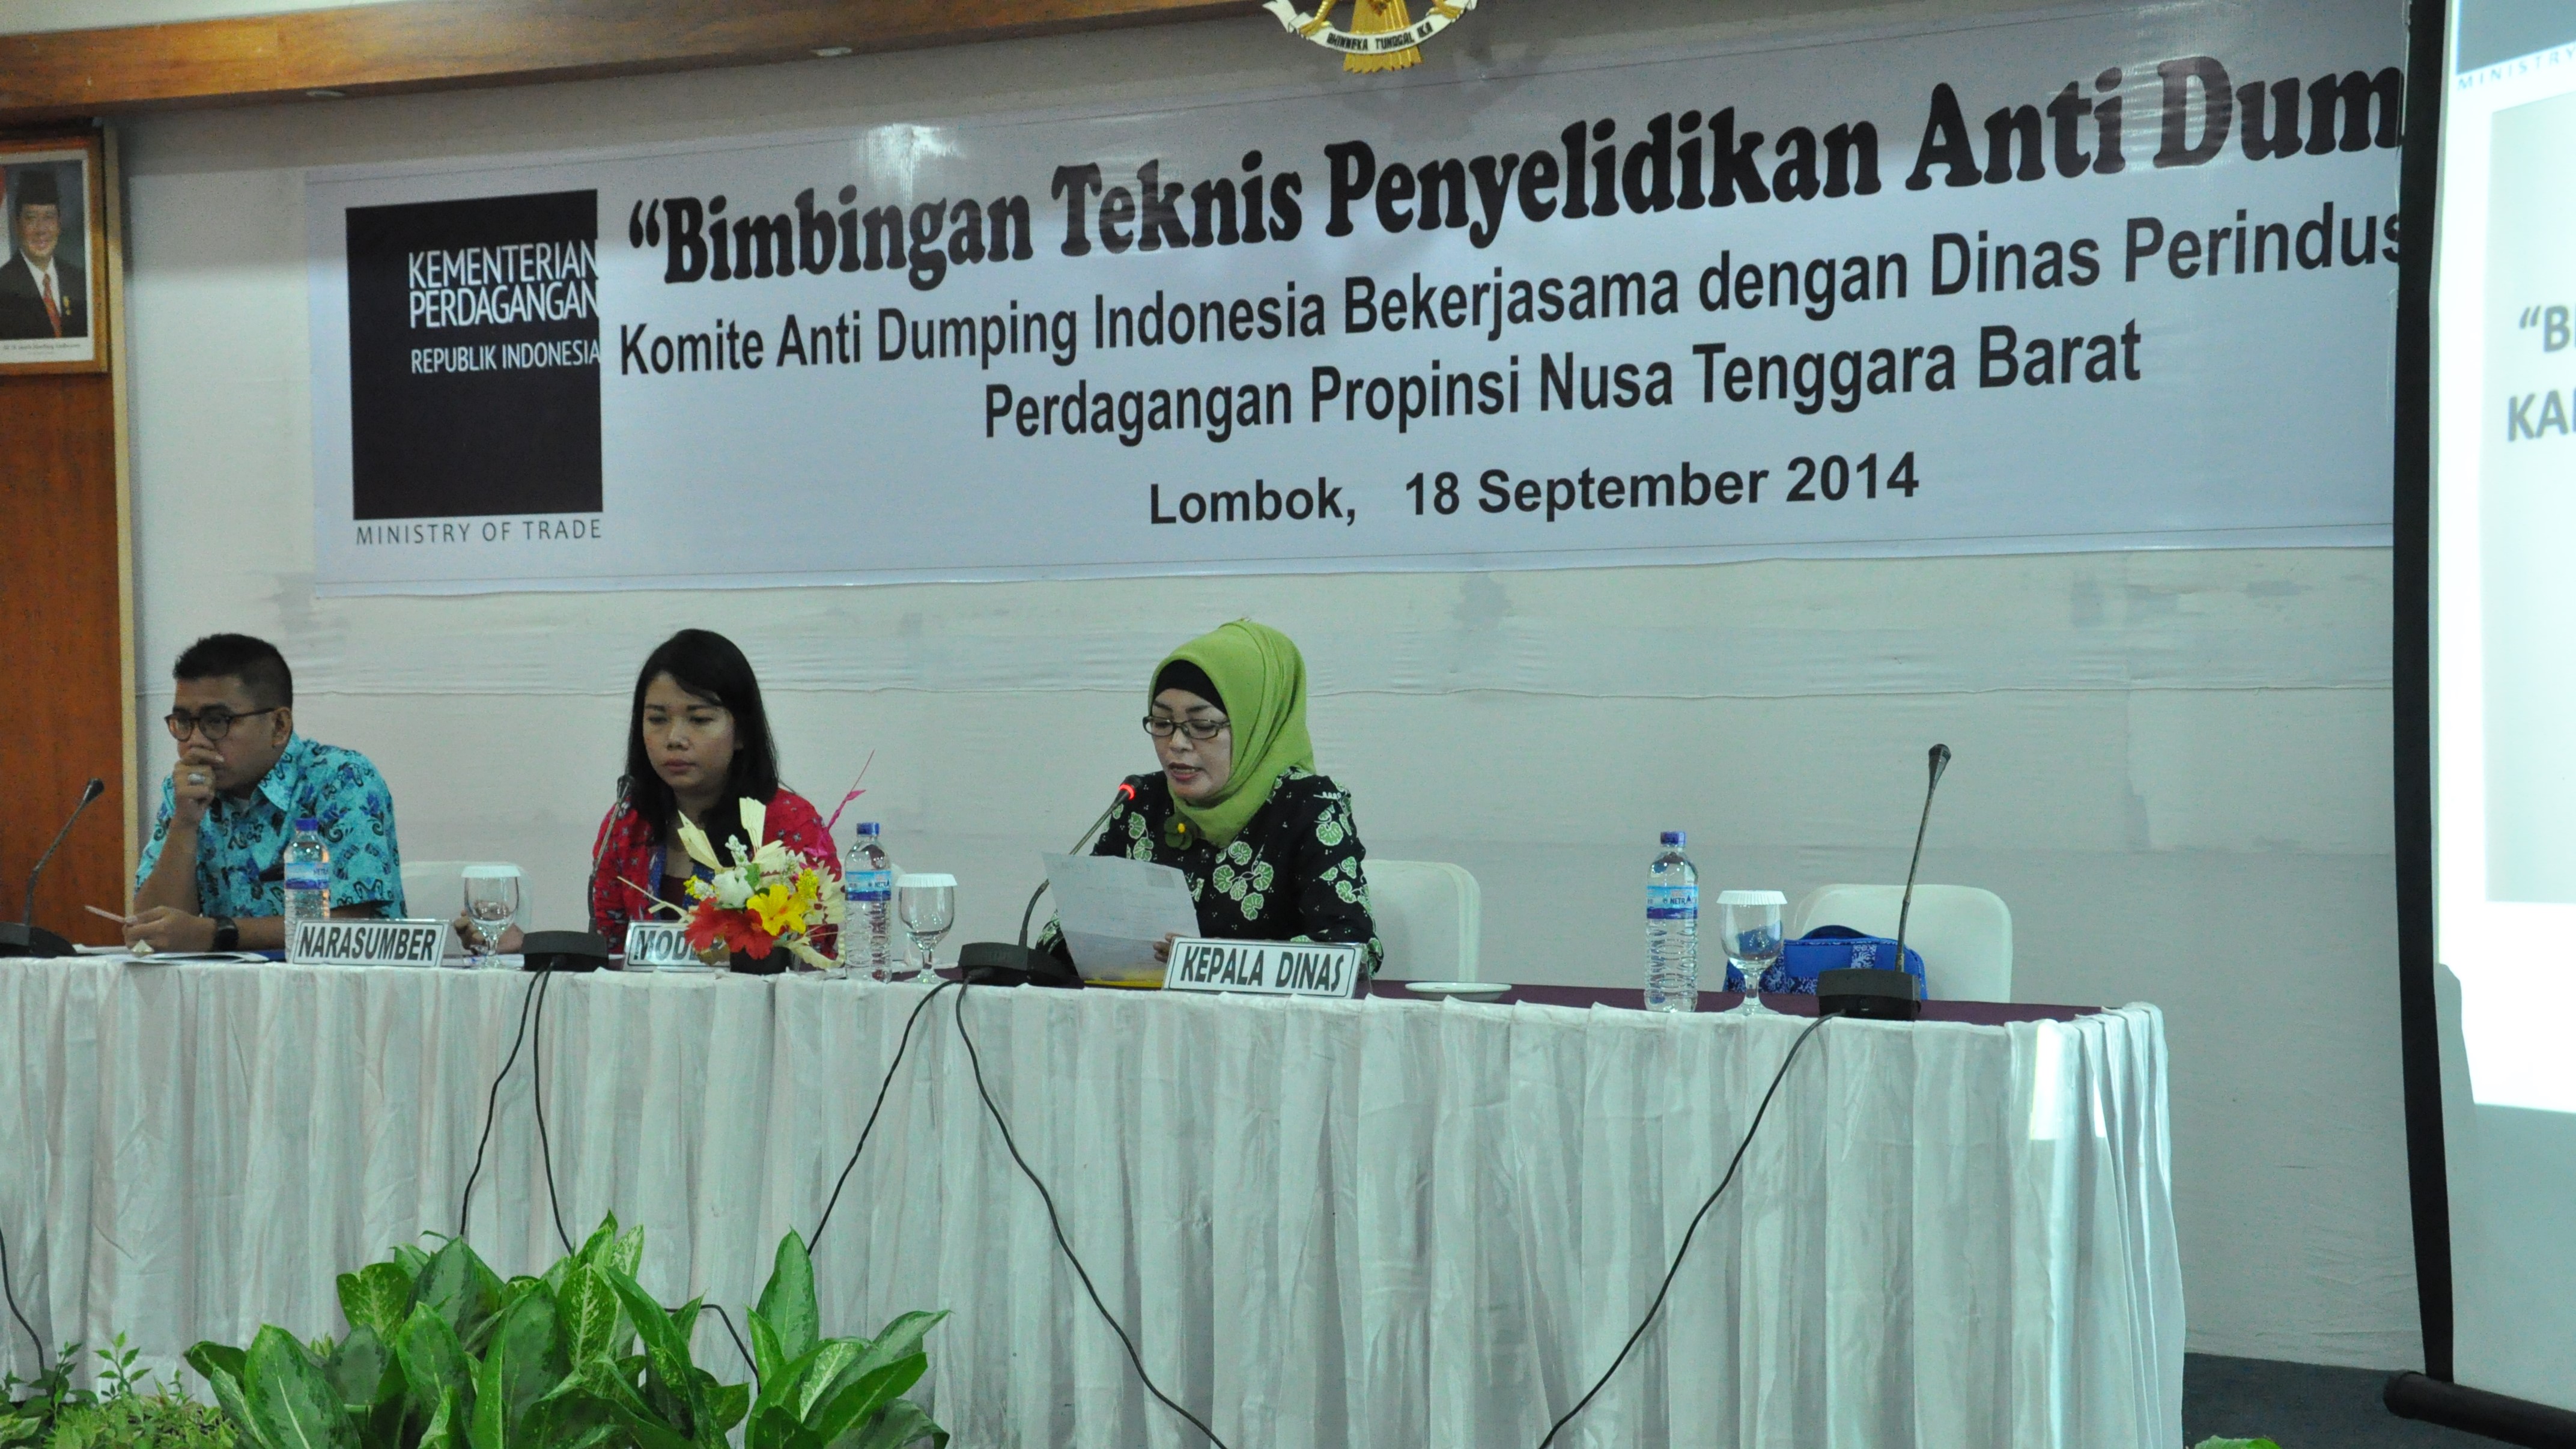 Bimbingan Teknis Penyelidikan Anti Dumping di Lombok